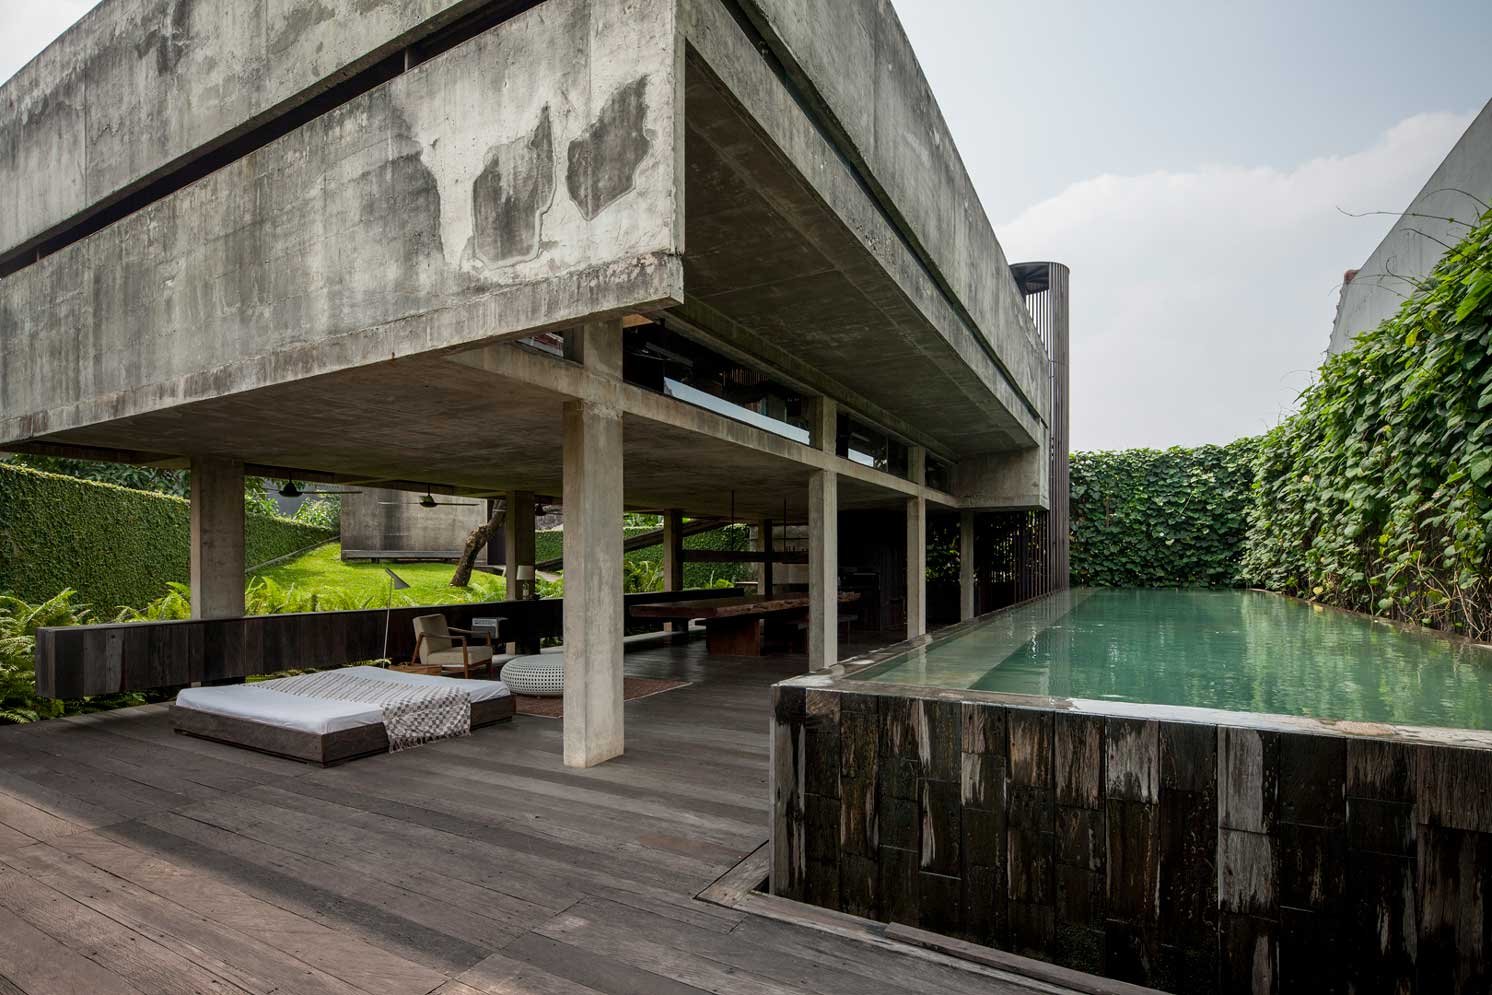 インドネシア ジャカルタの建築家、アンドラ・マティン氏の自宅の写真 | Make New Magazine「未来の定番」をつくるために、パナソニックのリアルな姿を伝えるメディア